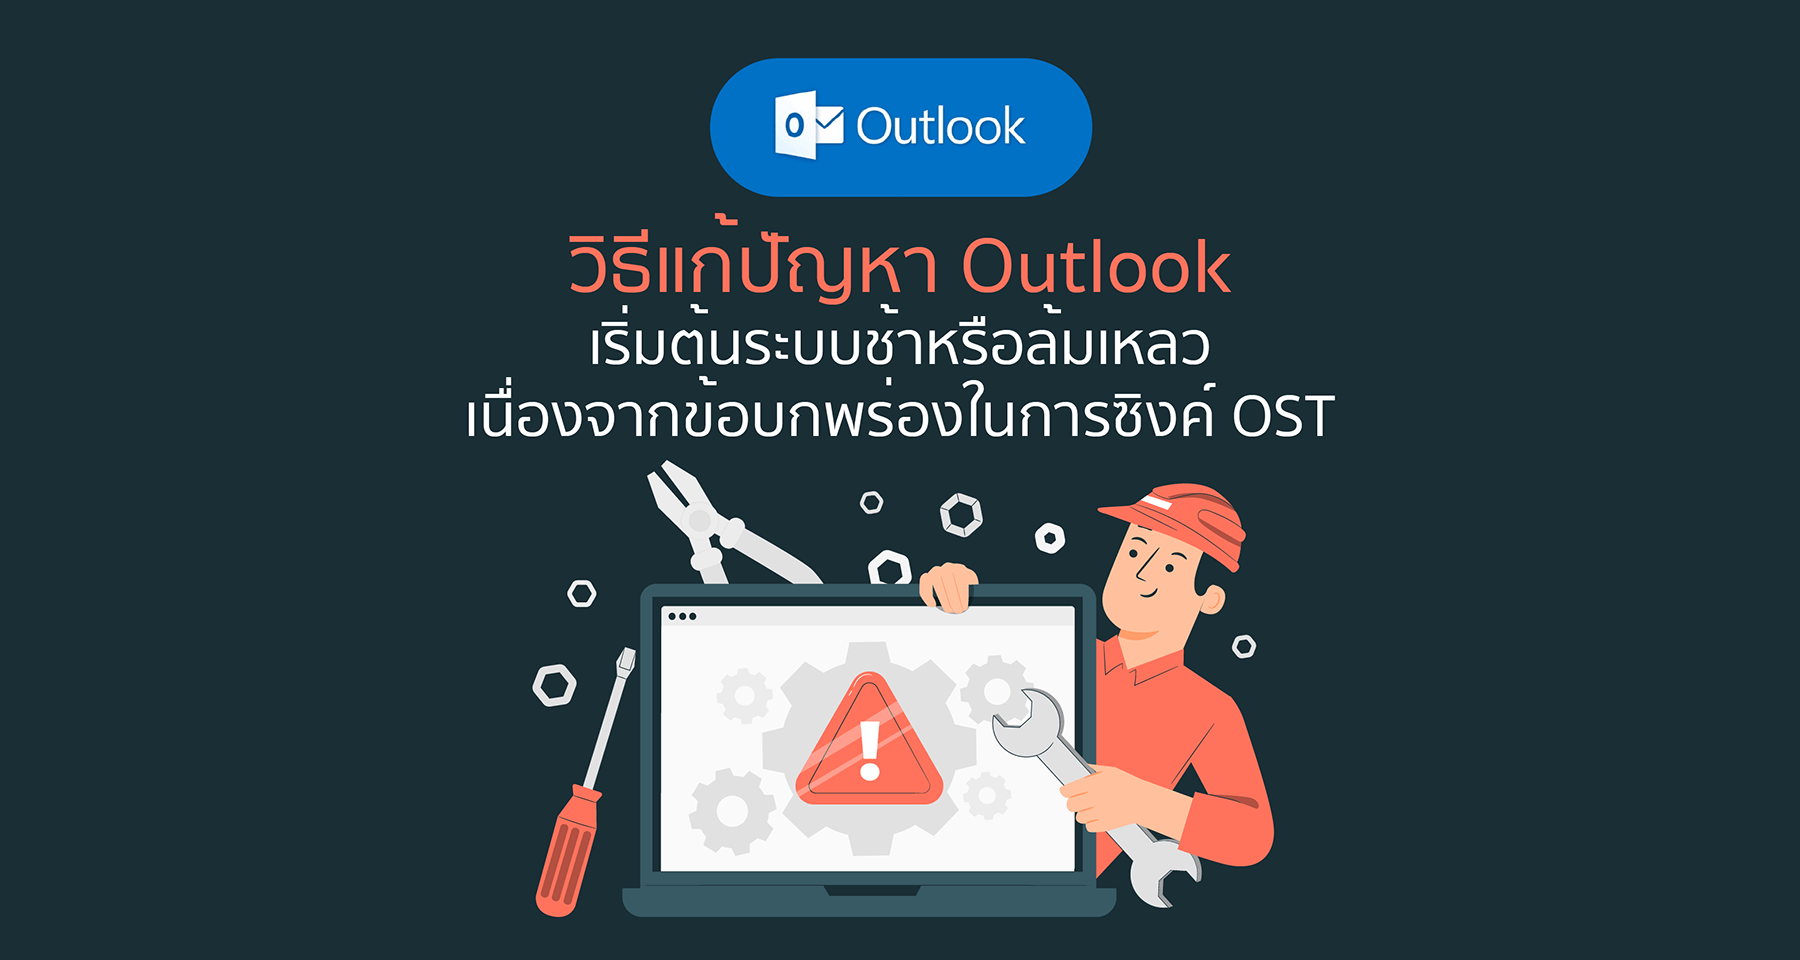 วิธีแก้ปัญหา Outlook เริ่มต้นระบบช้าหรือล้มเหลวเนื่องจากข้อบกพร่องในการซิงค์ OST